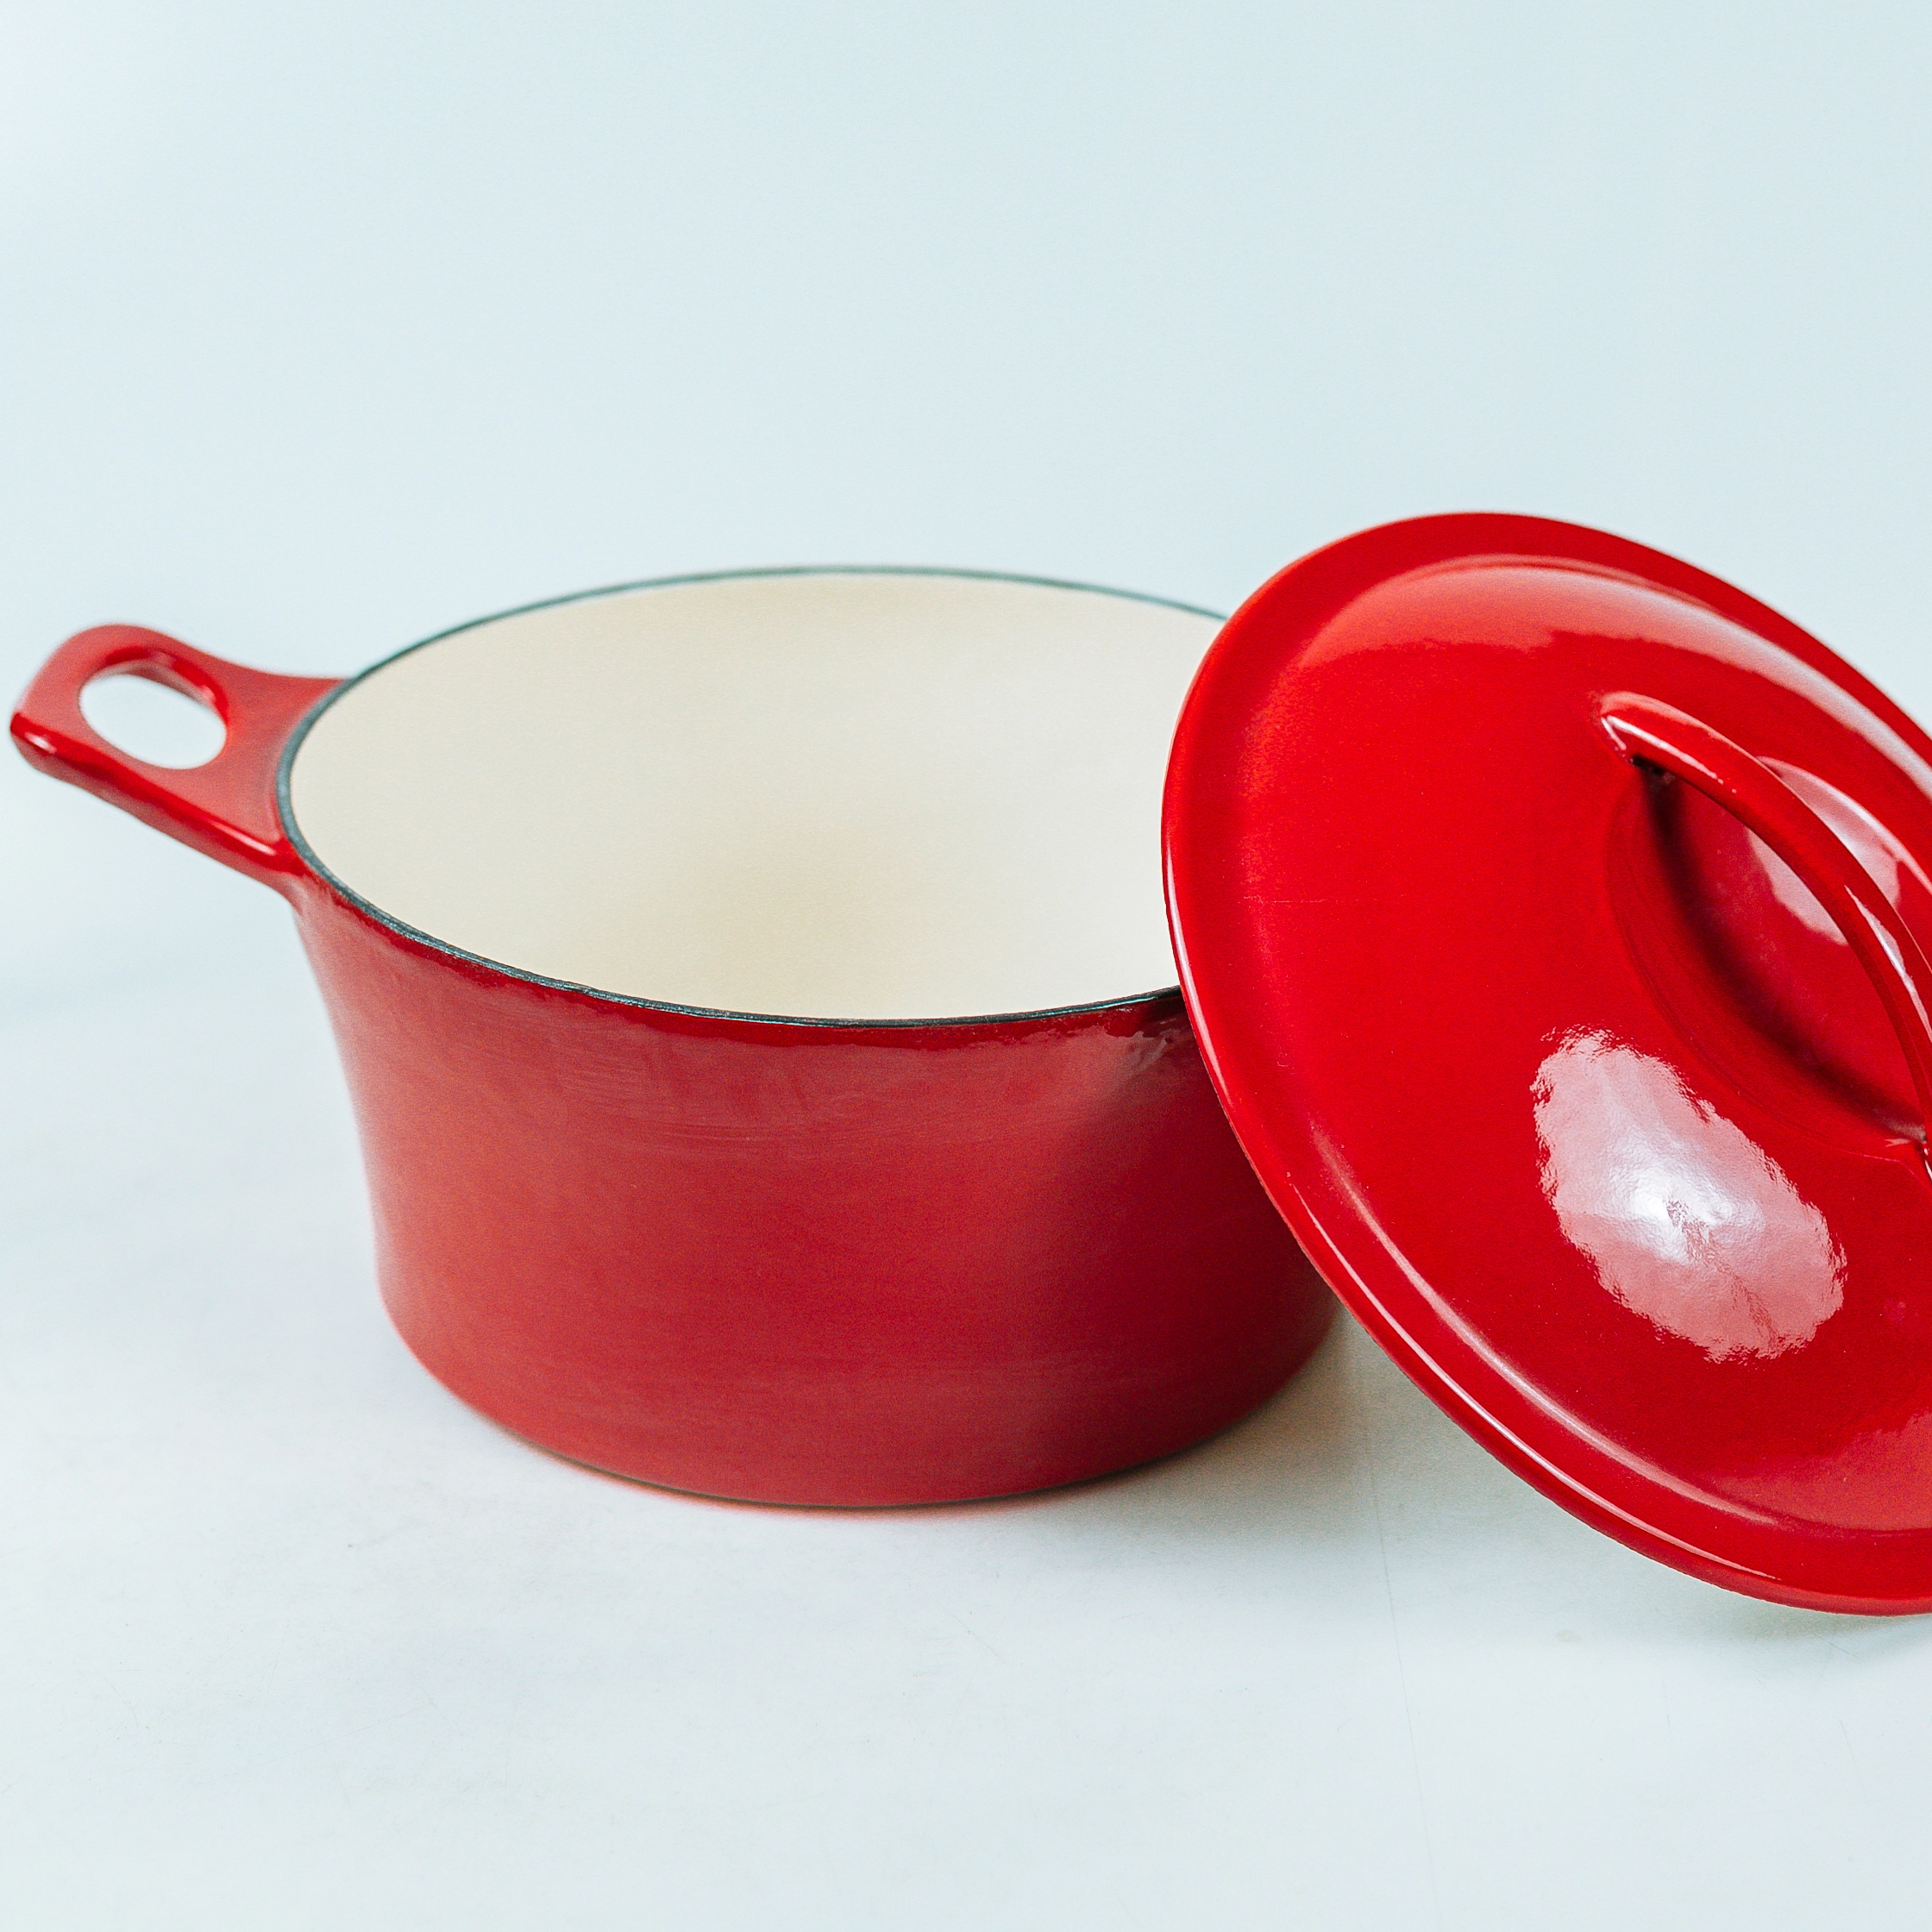 Чугунная голландская печь с красной эмалью для изготовителей оборудования